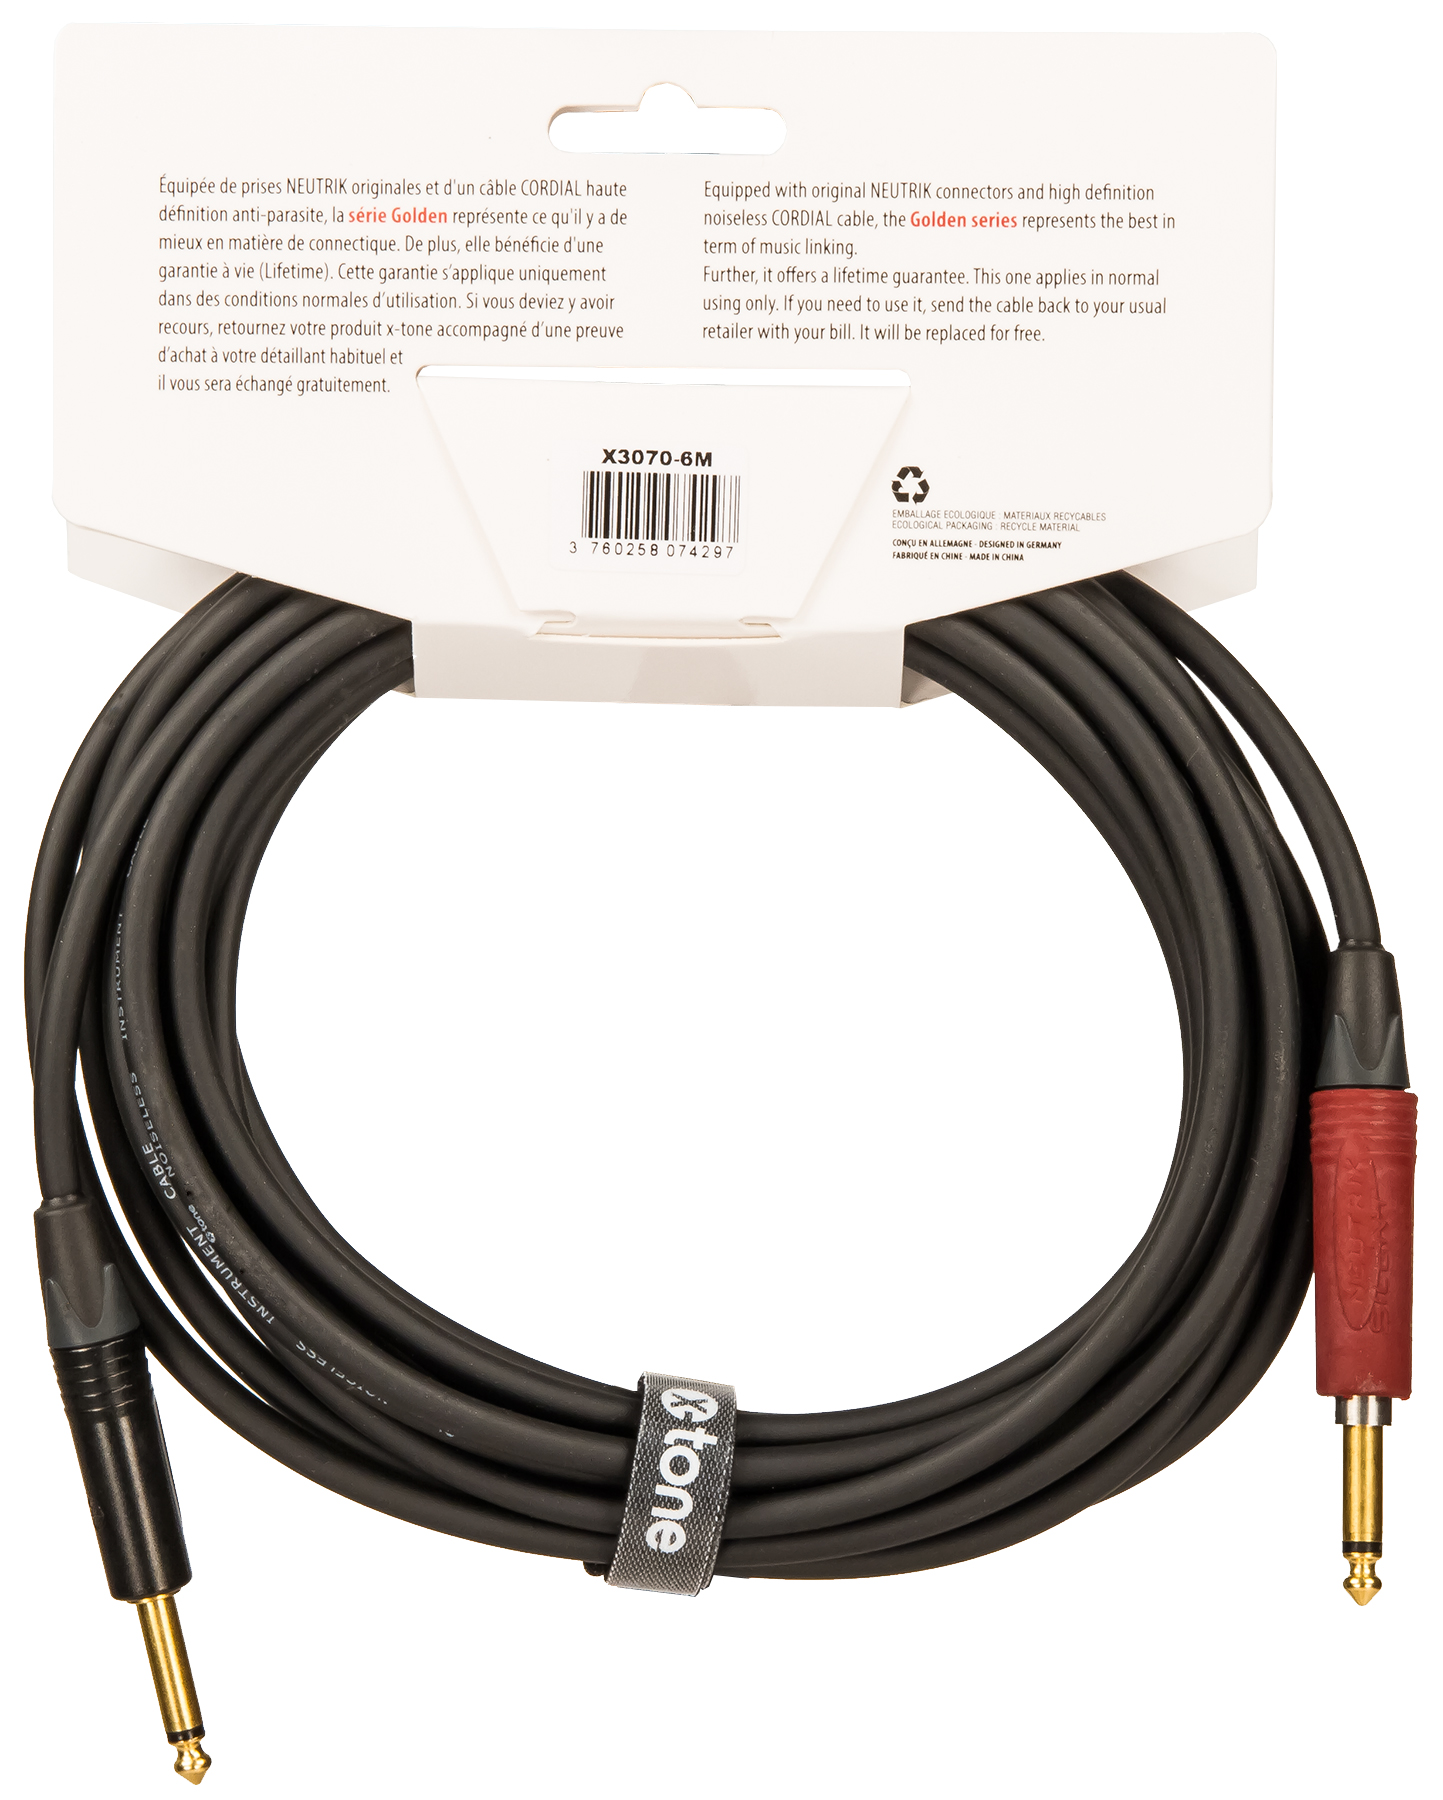 X-tone X3070-6m Instrument Cable Golden Neutrik Silent Droit/droit 6m - Cable - Variation 1